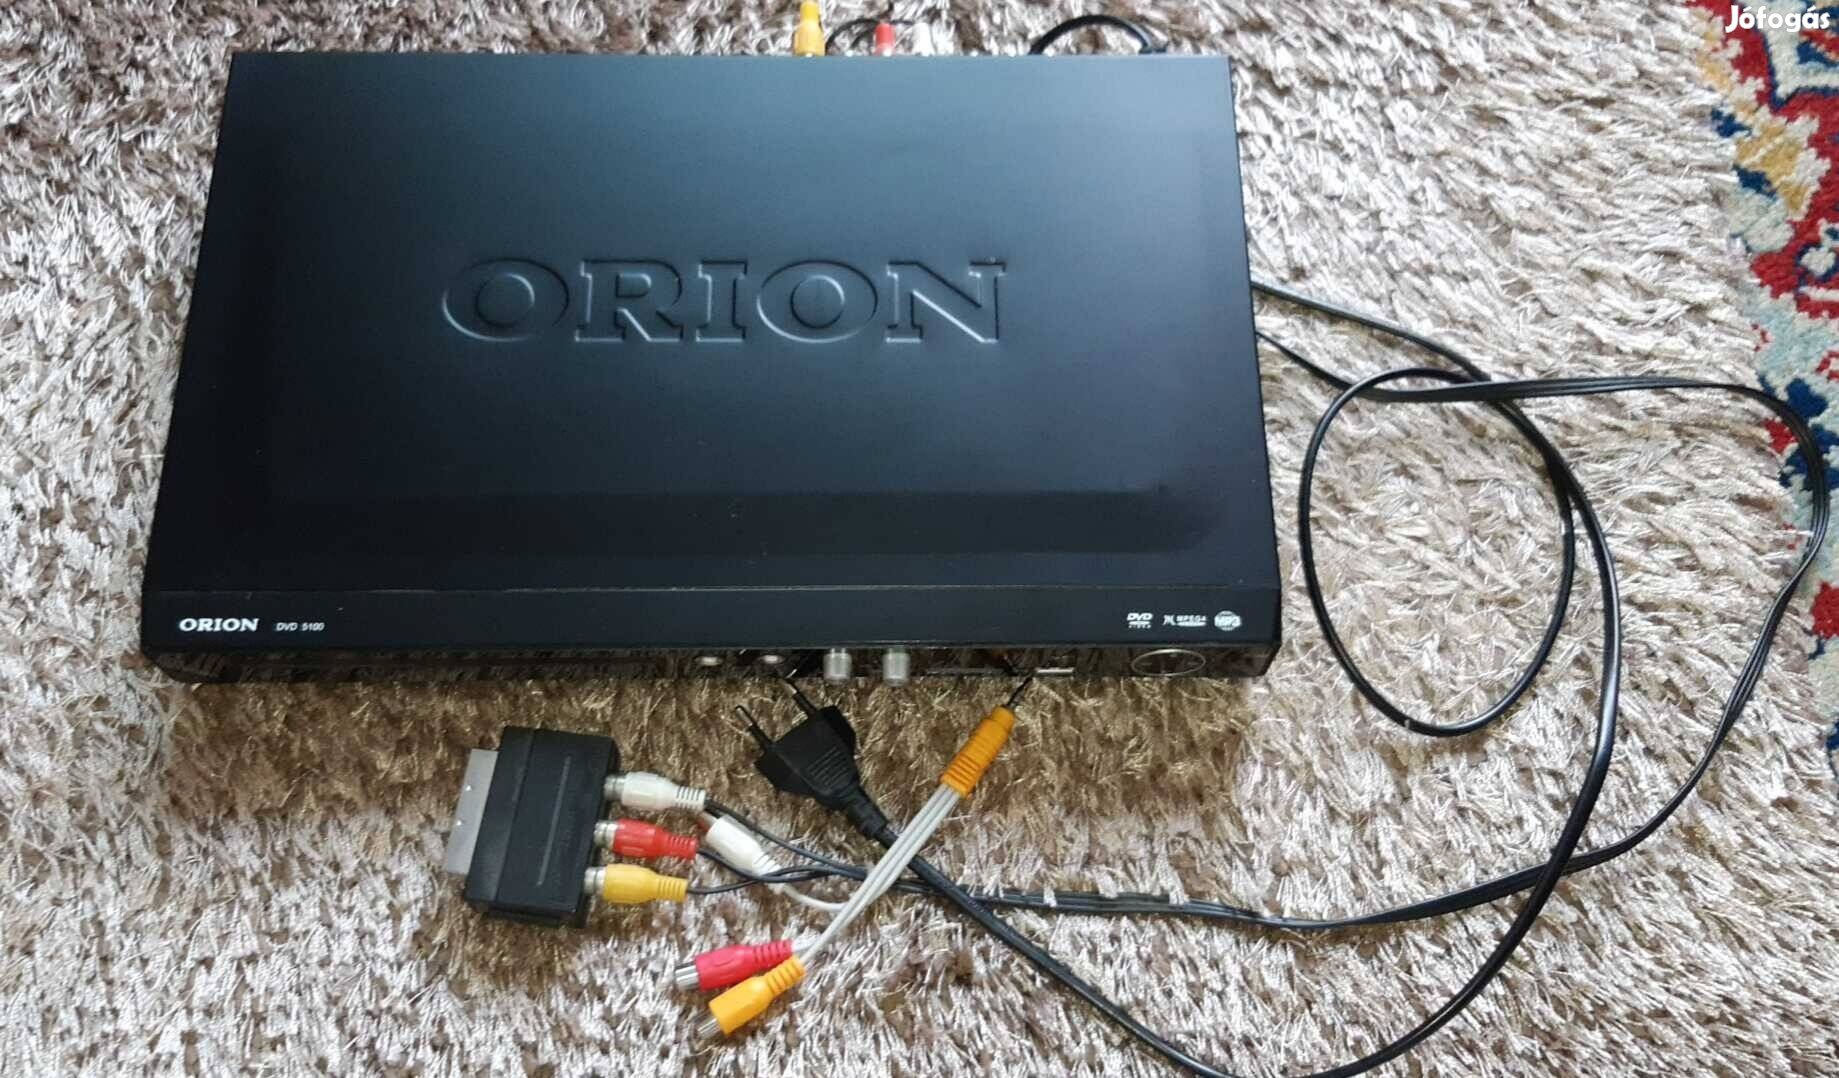 Orion video szép állapotban eladó